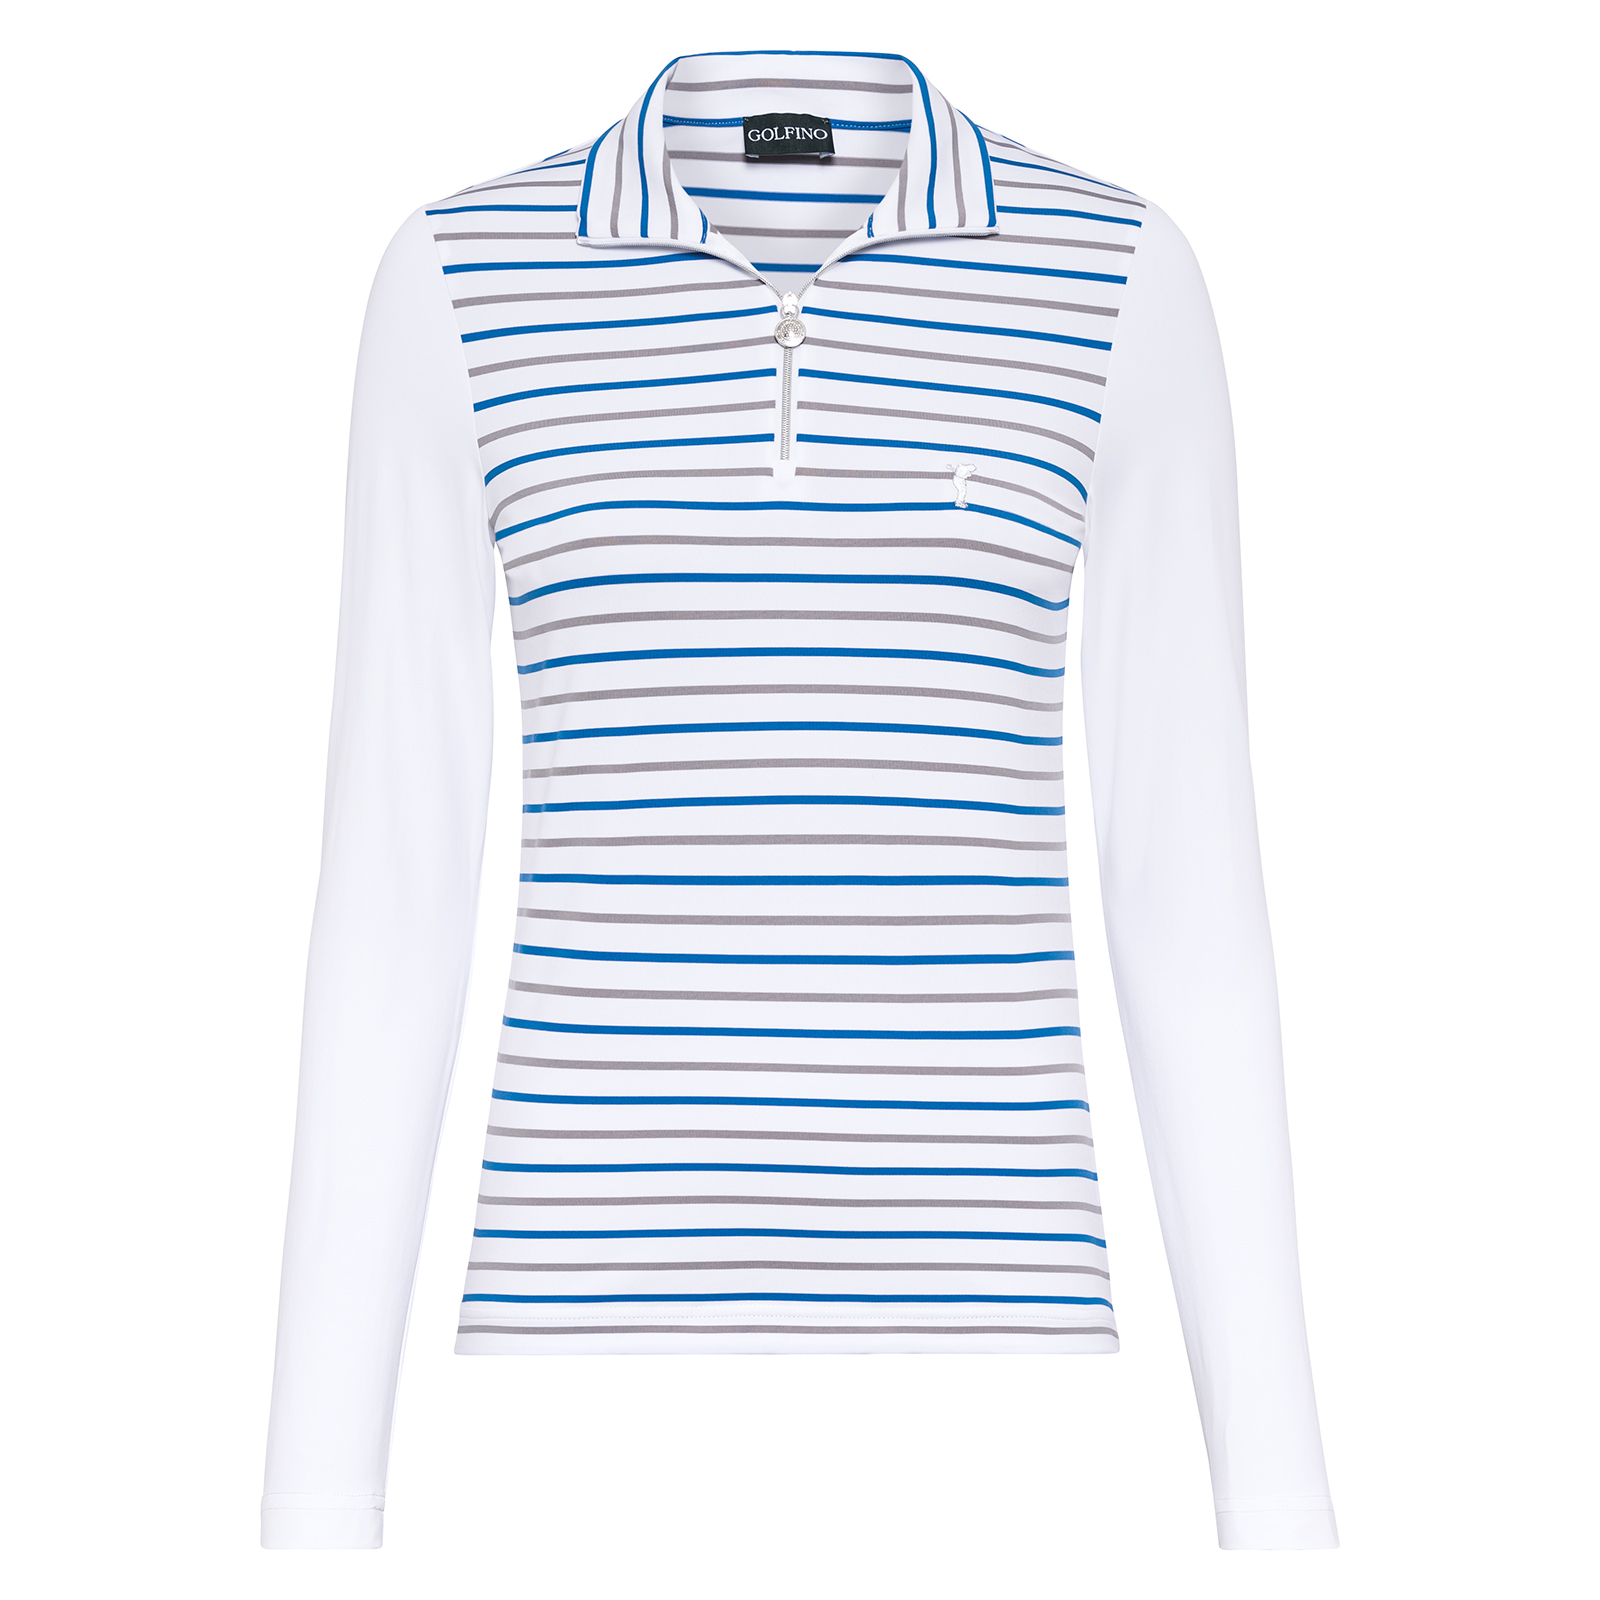 Leichtes und luftiges Damen Golf Shirt